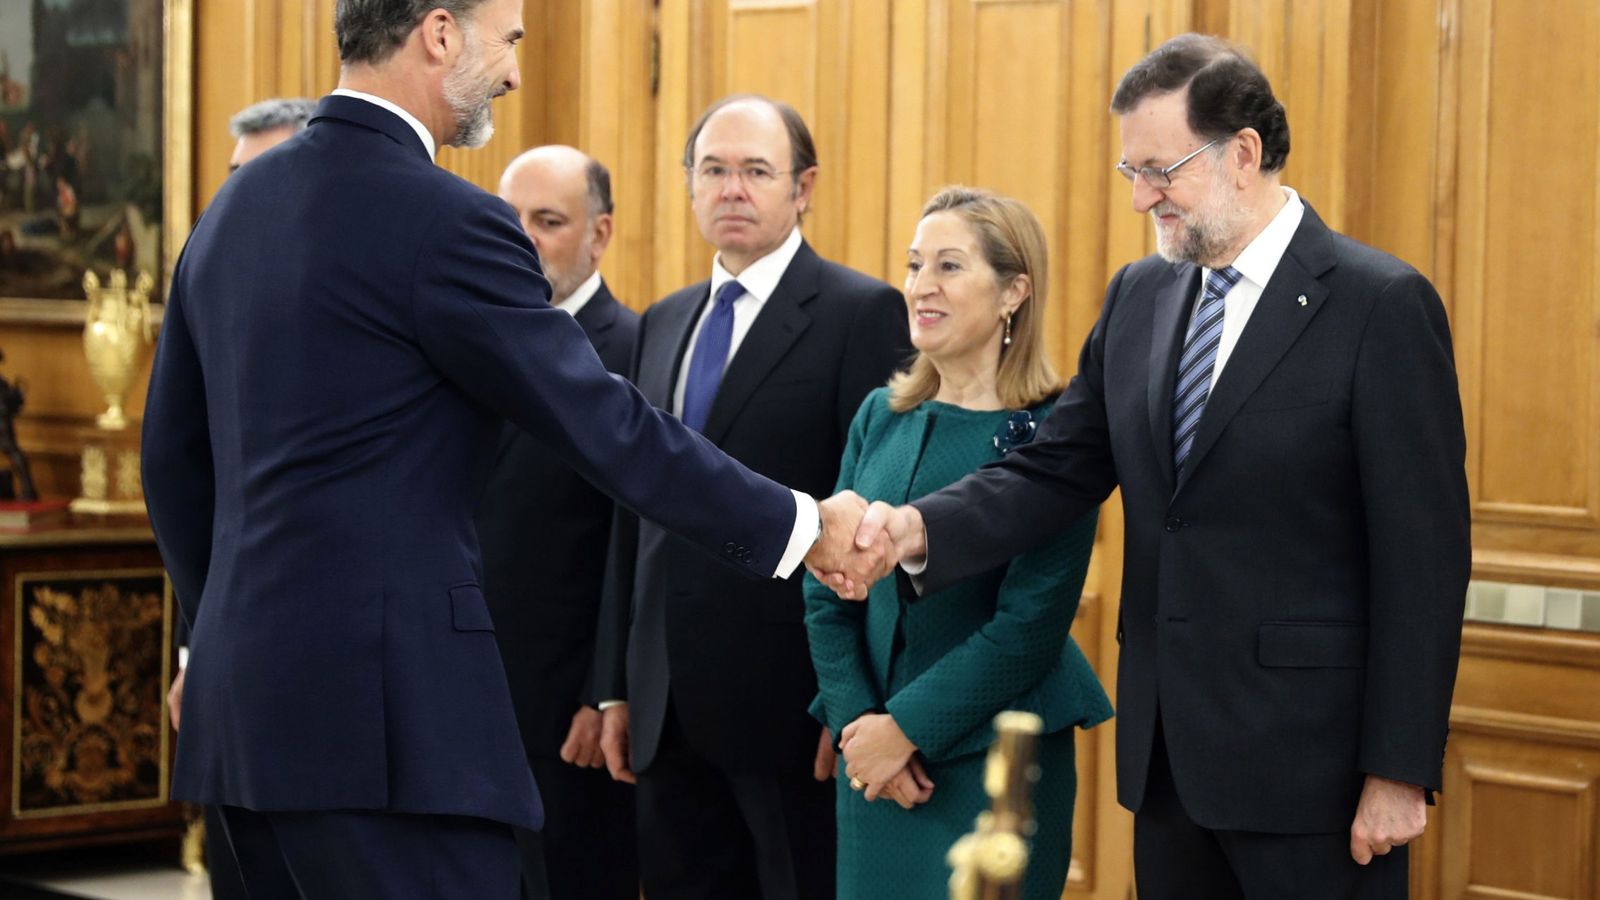 Foto: Felipe VI saluda al jefe del Ejecutivo, Mariano Rajoy, en presencia de la presidenta del Congreso, Ana Pastor, y el presidente del Senado, Pío García Escudero. (EFE)